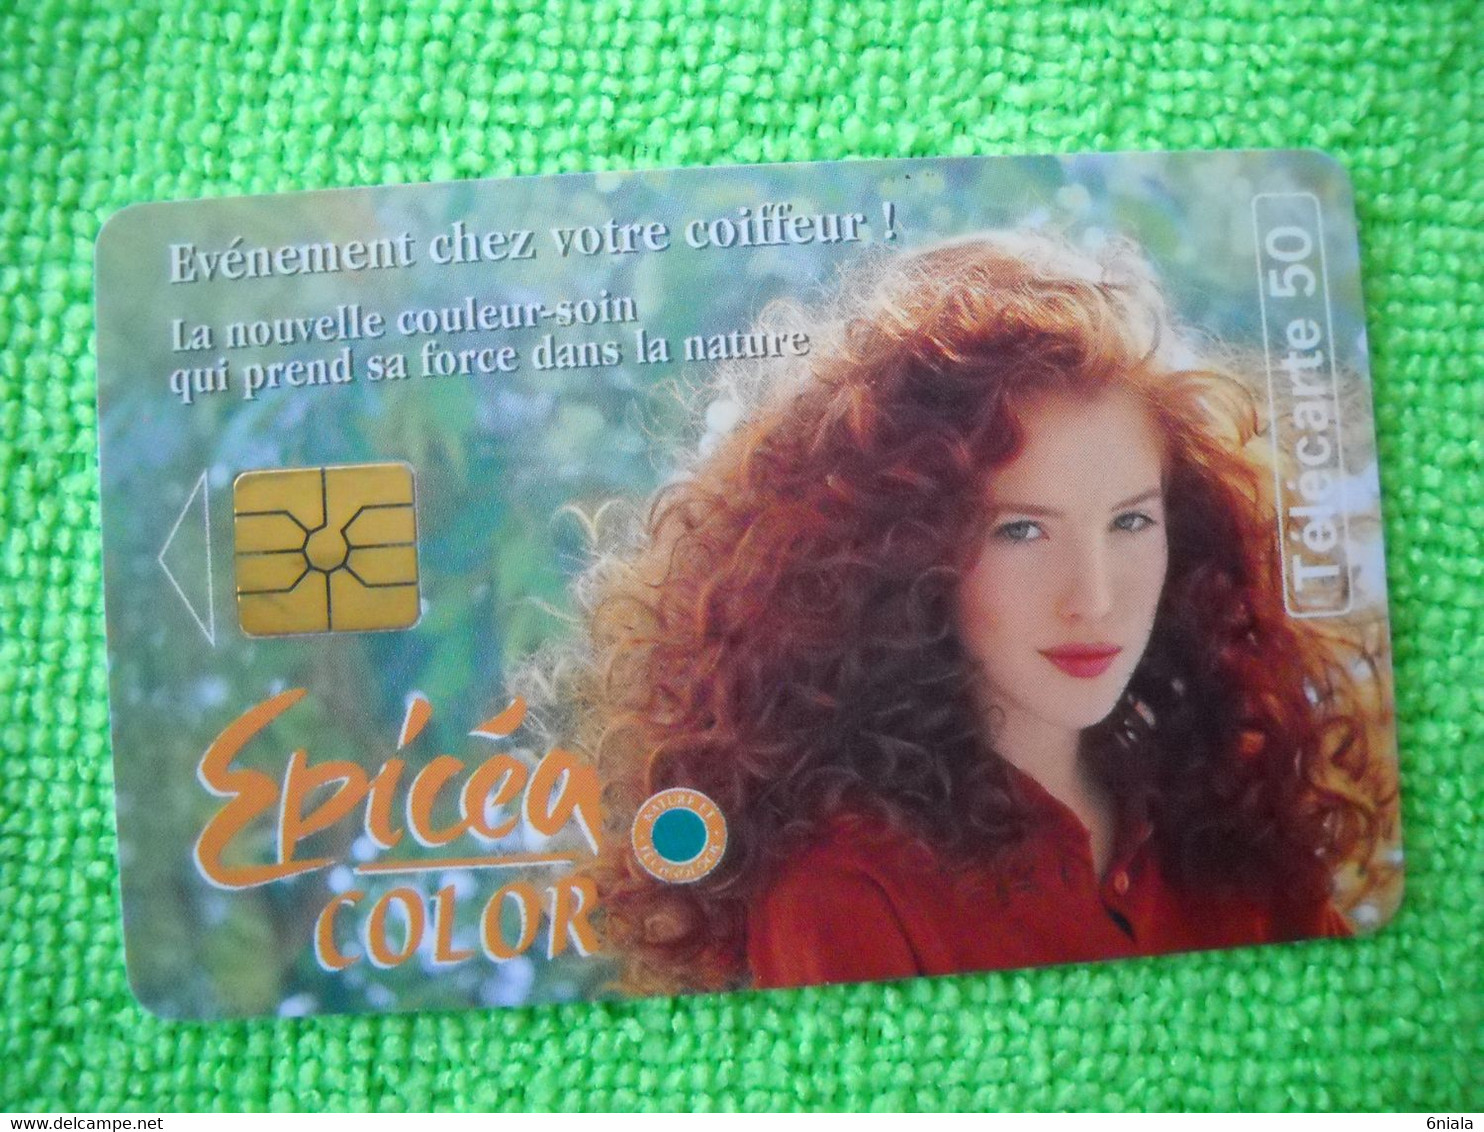 7110 Télécarte Collection EPICEA COLOR  Coloration Cheveux Shampoing     50u  ( Recto Verso)  Carte Téléphonique - Advertising